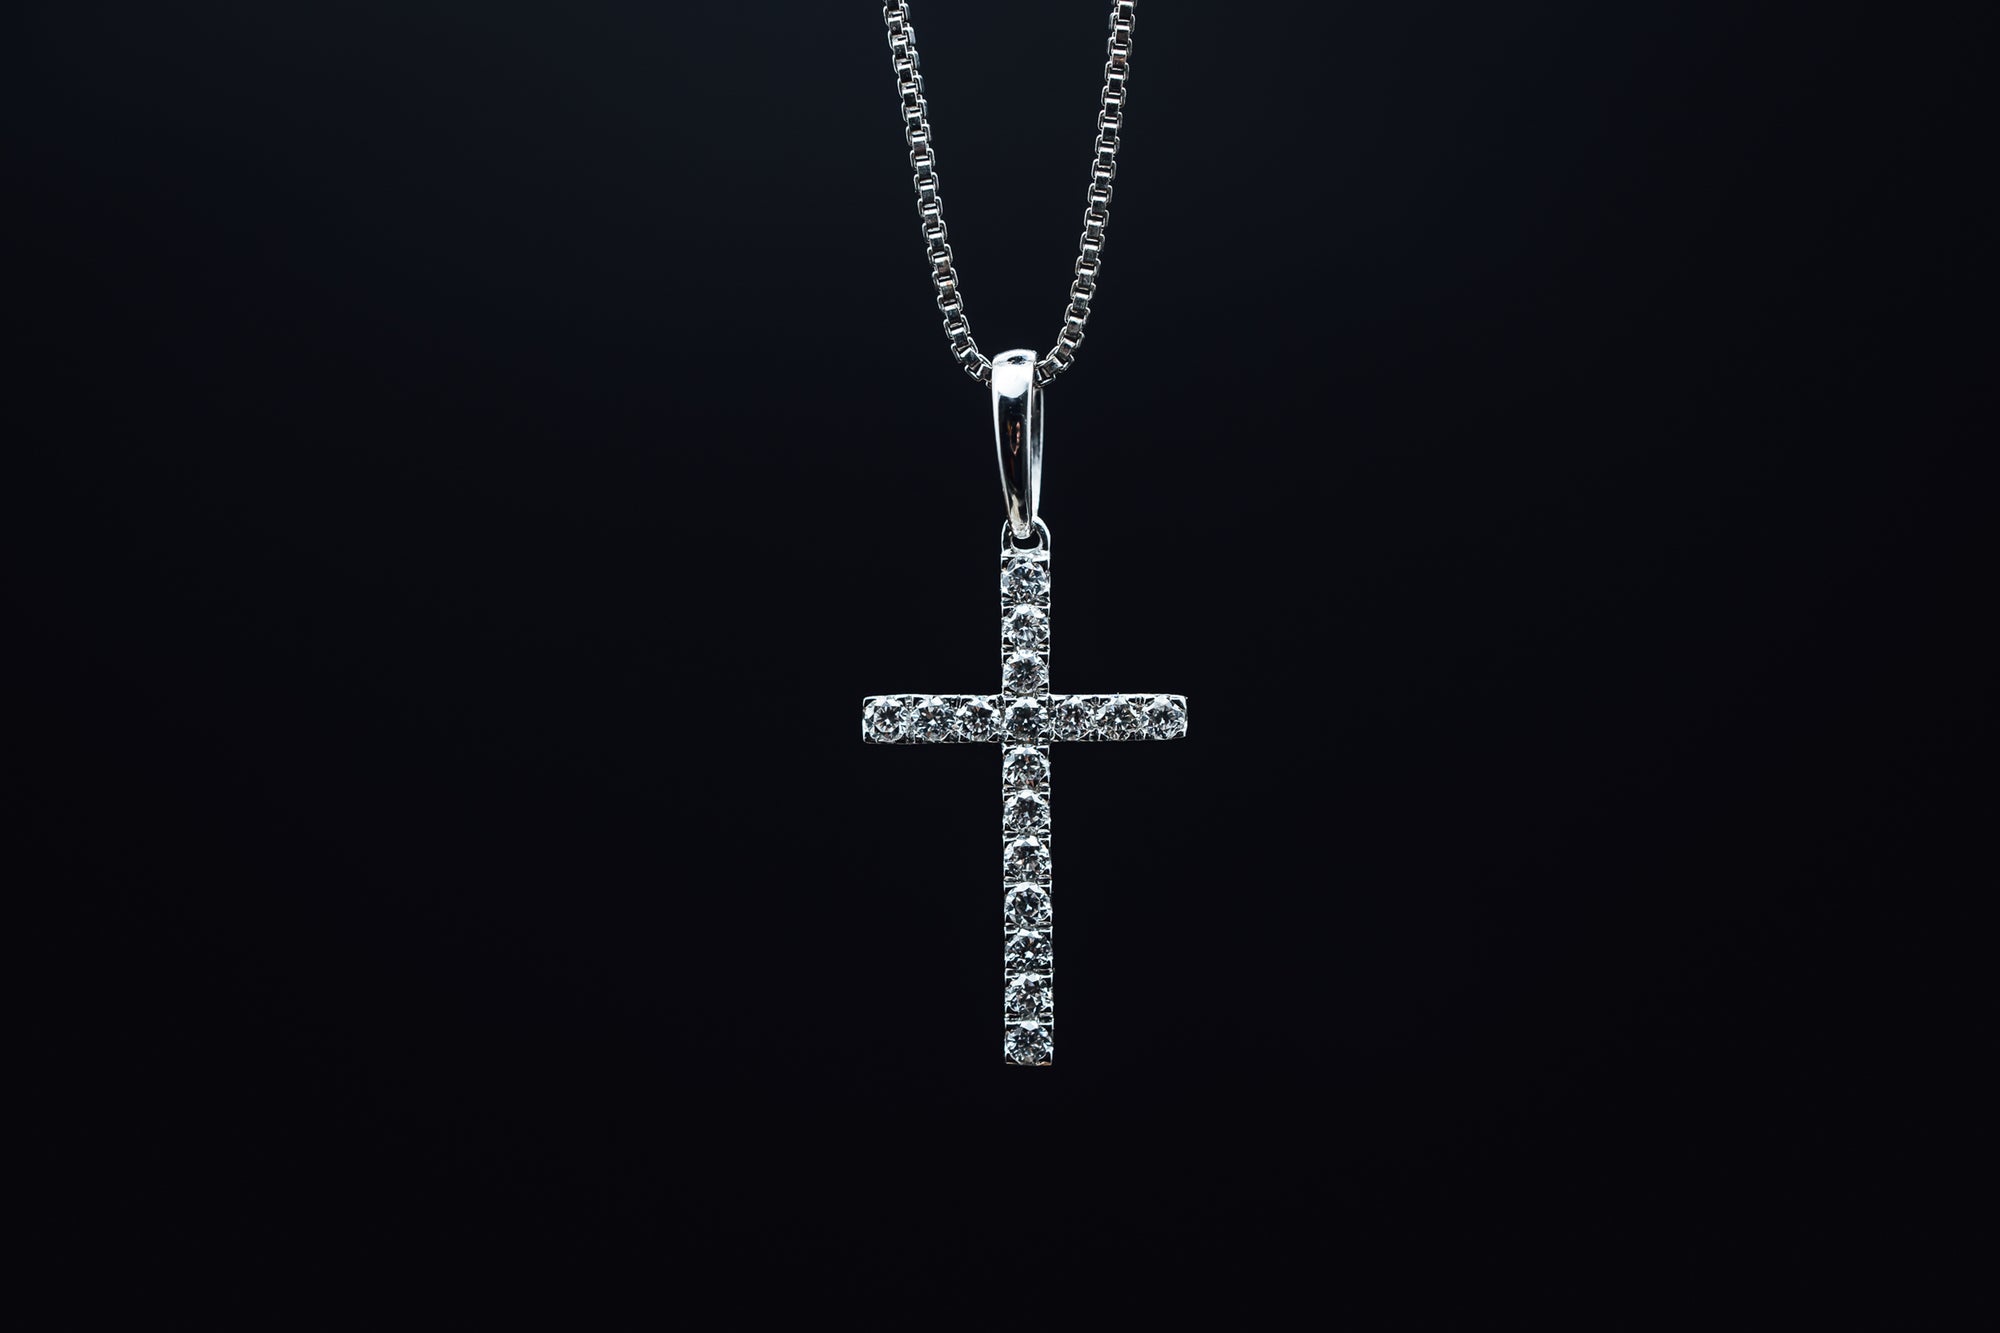 14k White Gold Diamond Cross